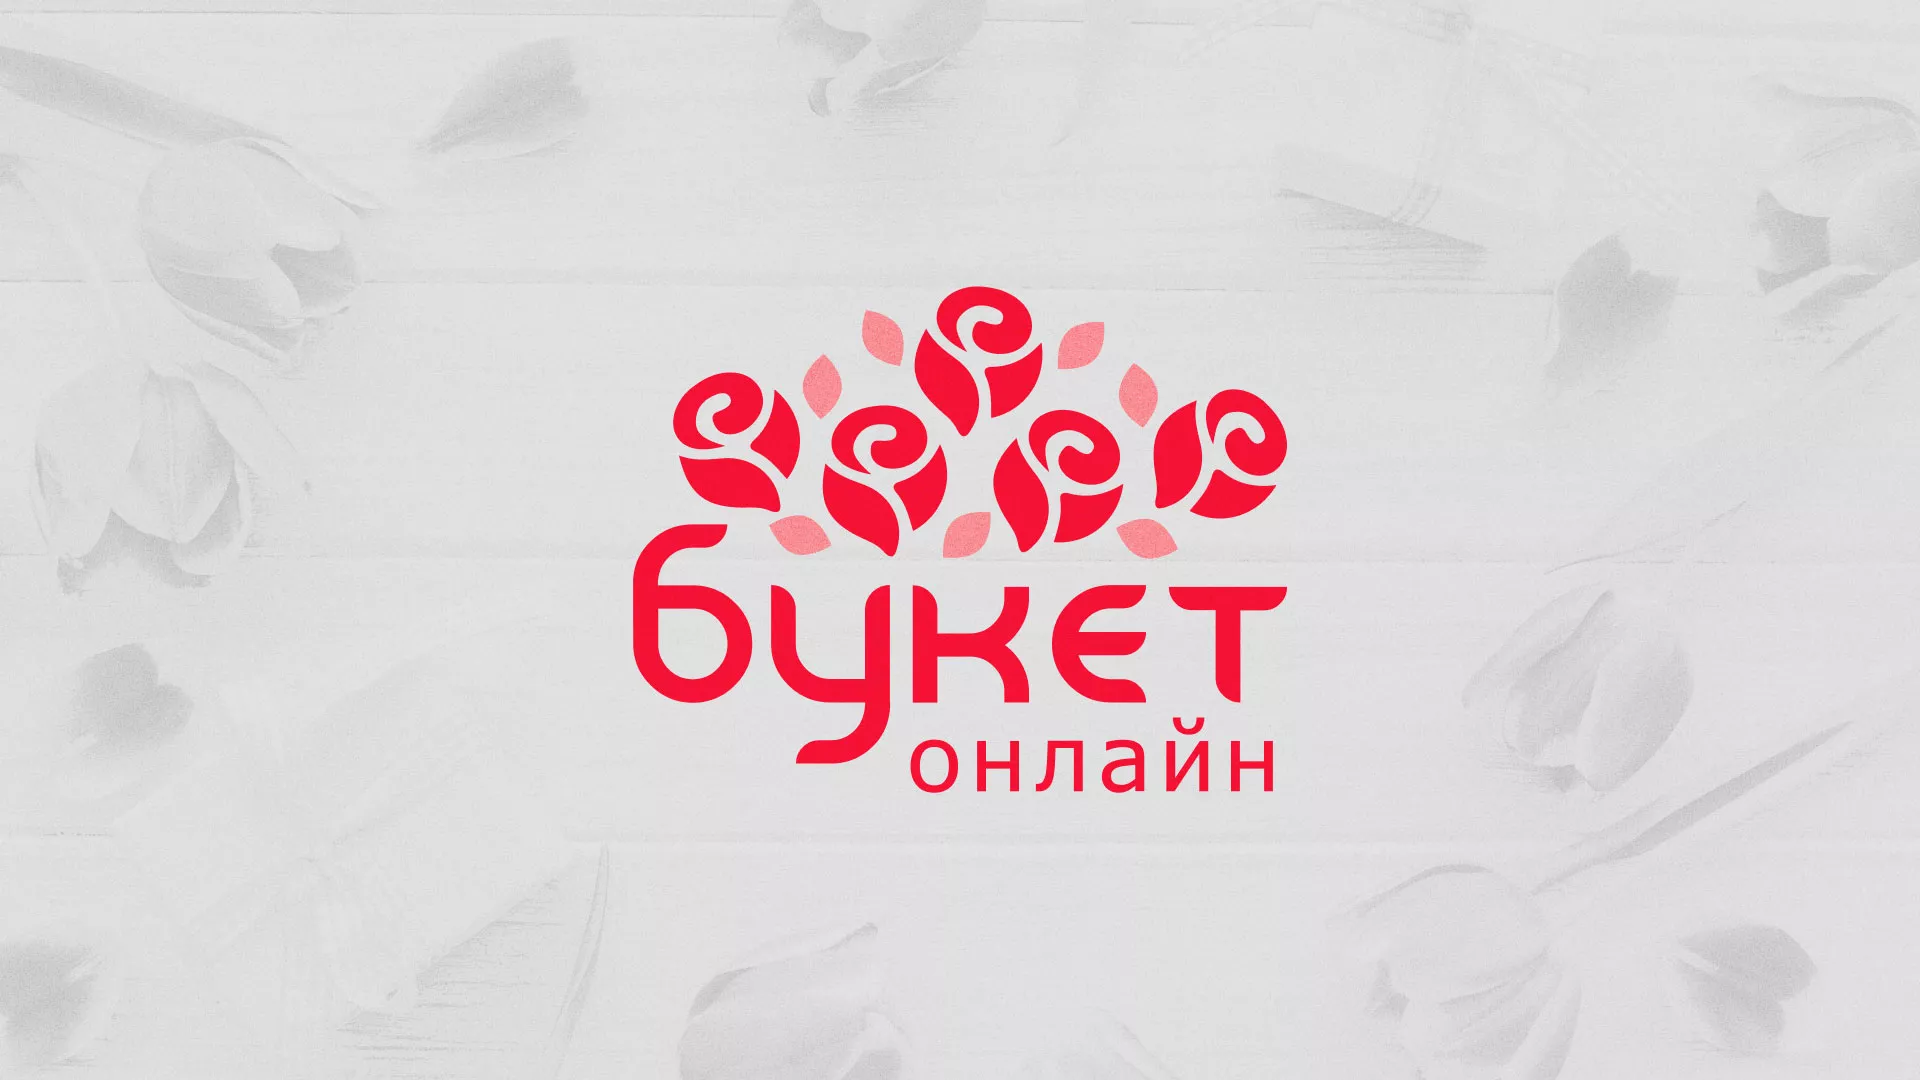 Создание интернет-магазина «Букет-онлайн» по цветам в Сочи